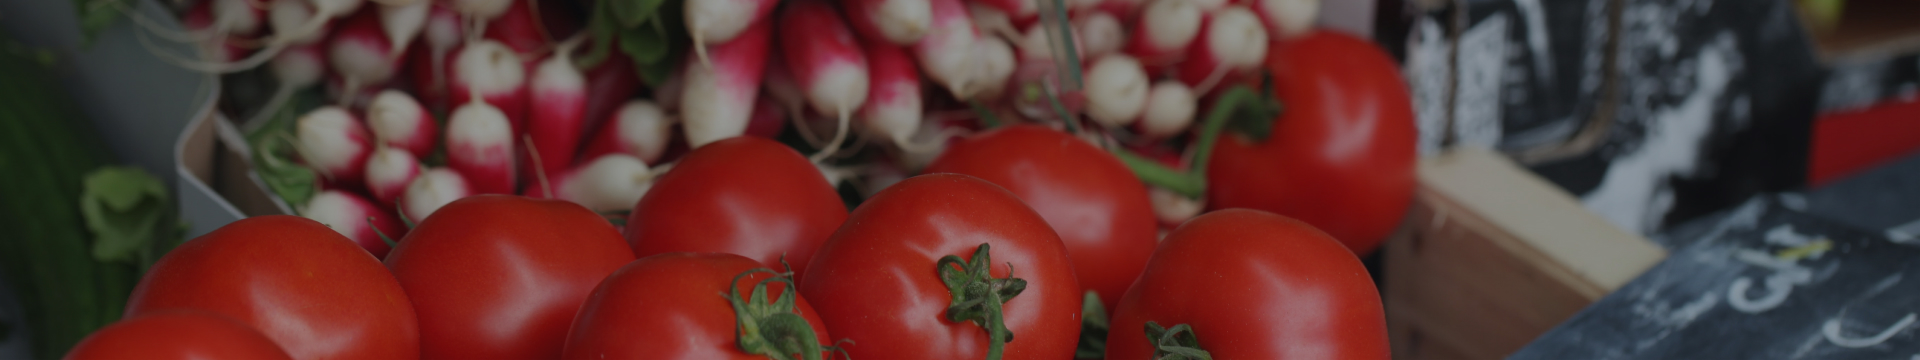 Tomate cerise vrac - Vente de fruits et légumes en ligne - Primeur Toulouse